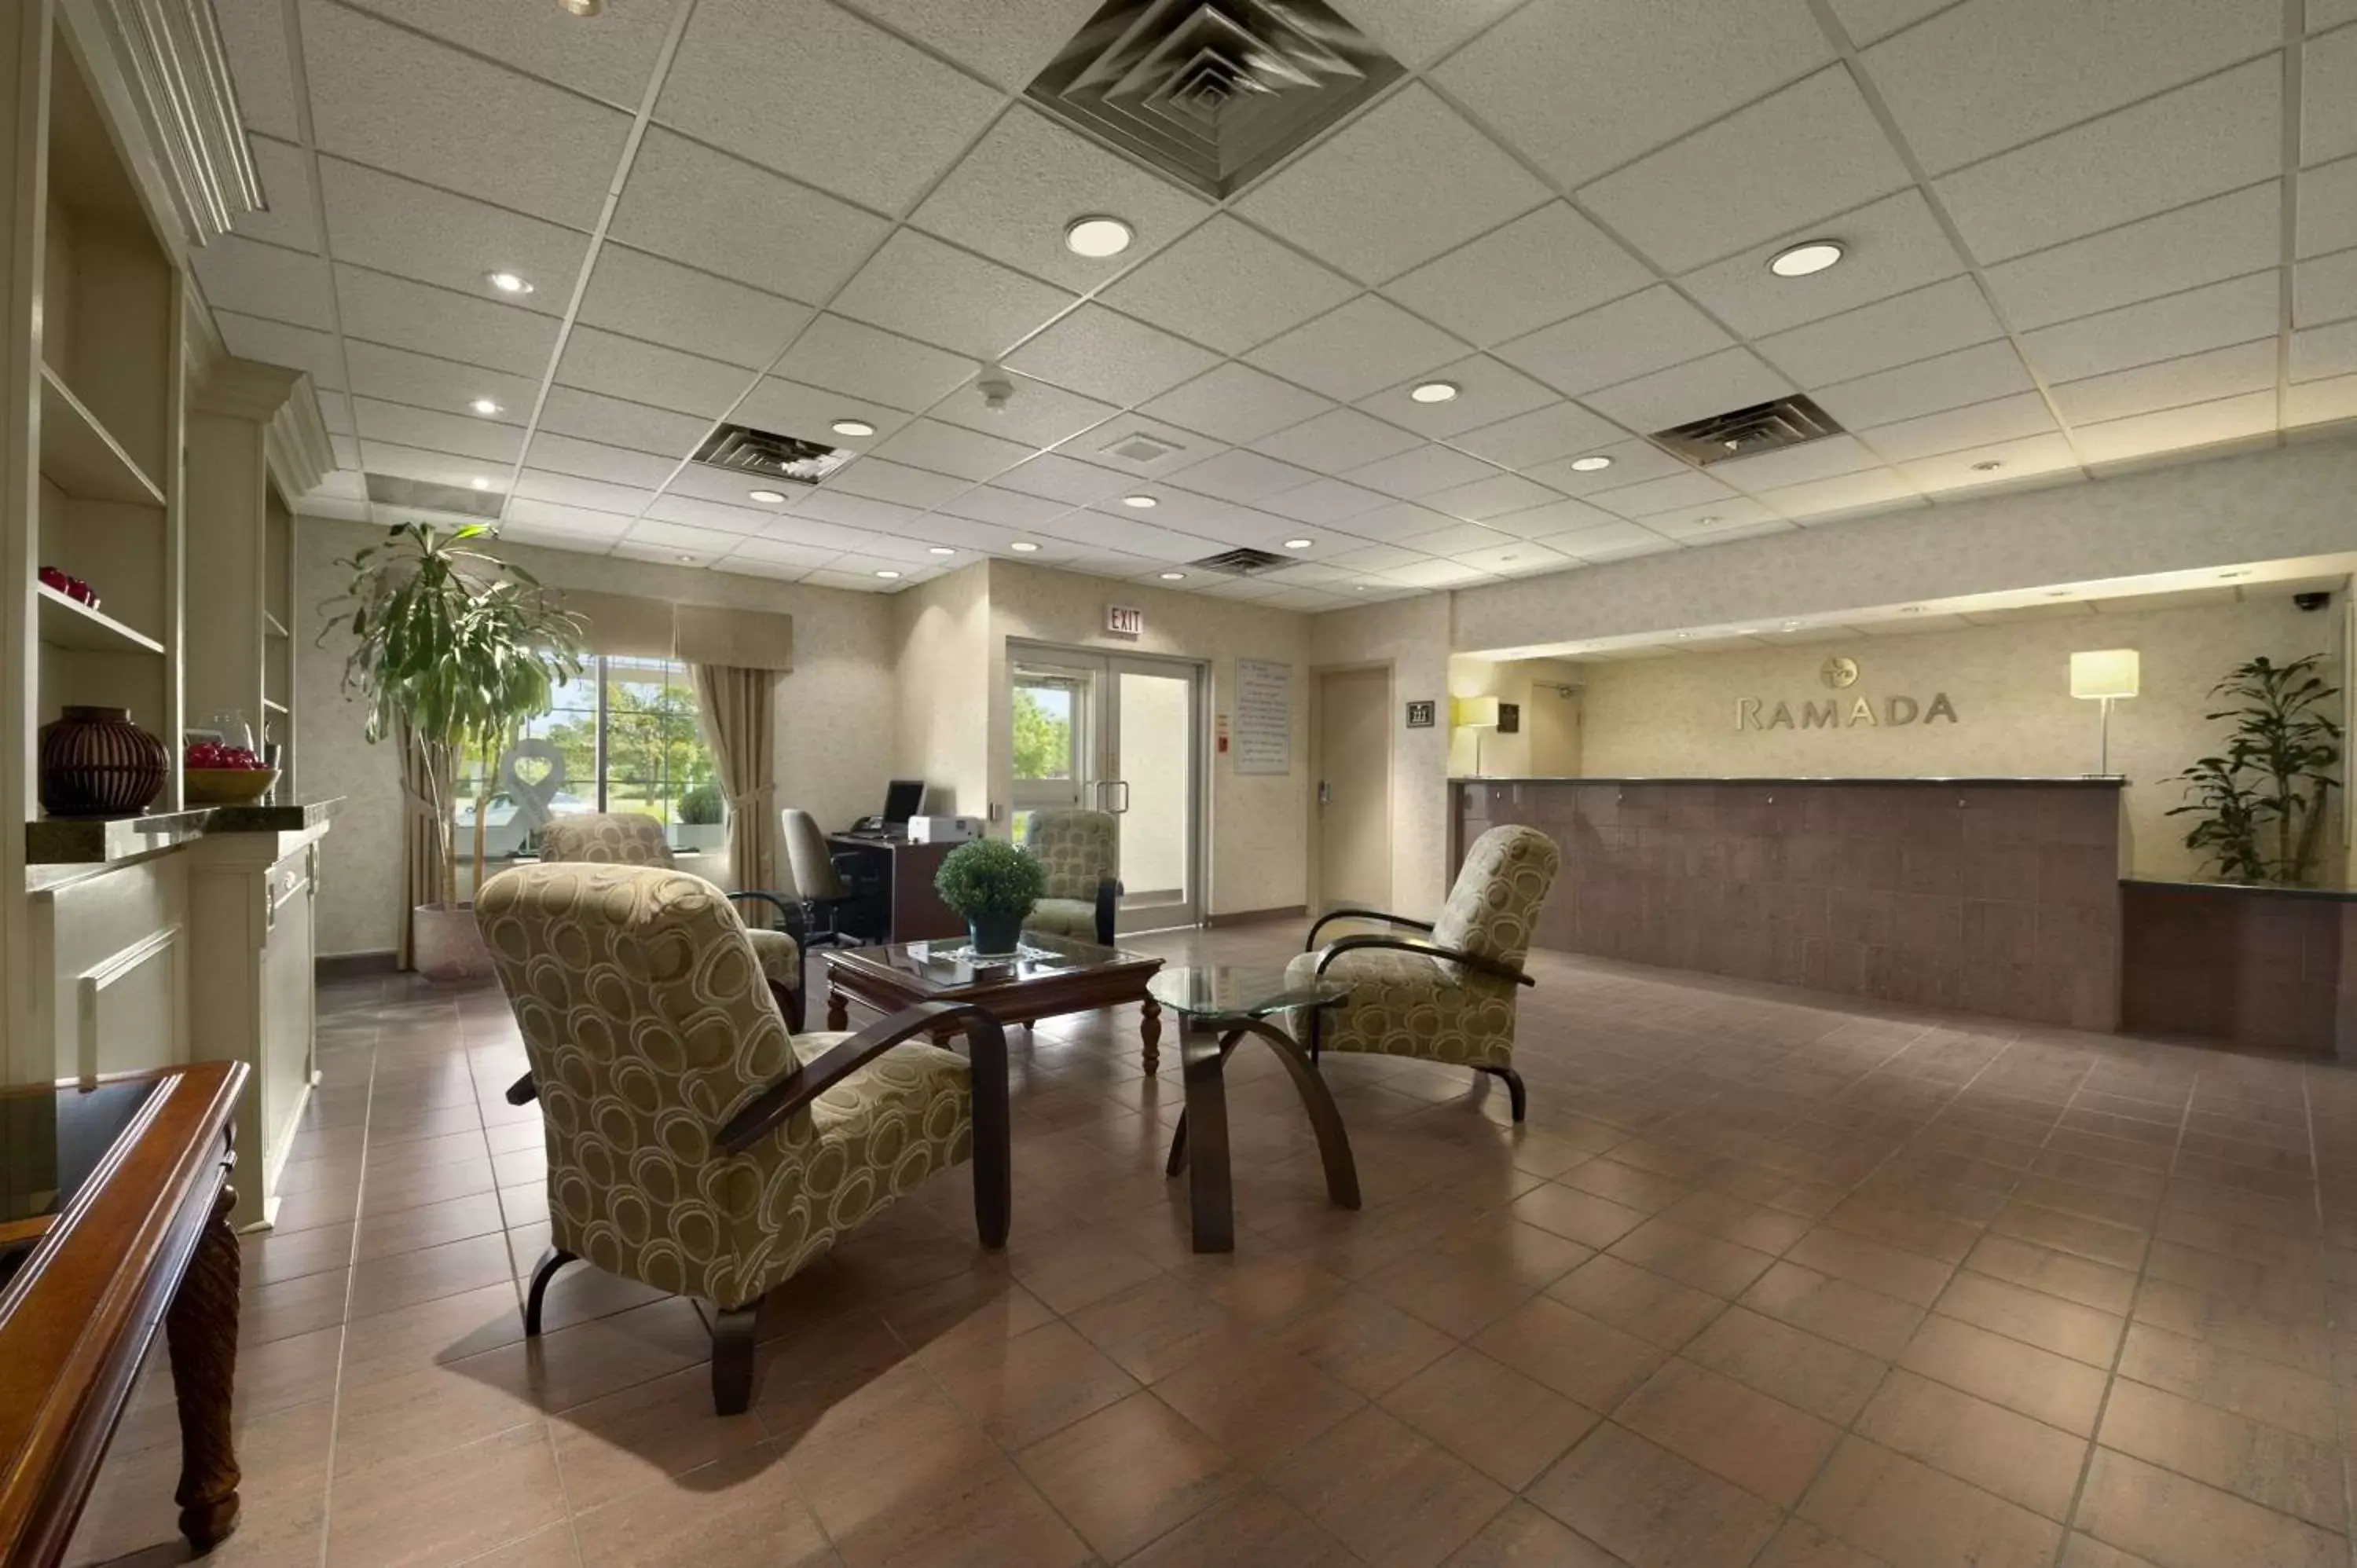 Lobby or reception, Lobby/Reception in Ramada by Wyndham Trenton